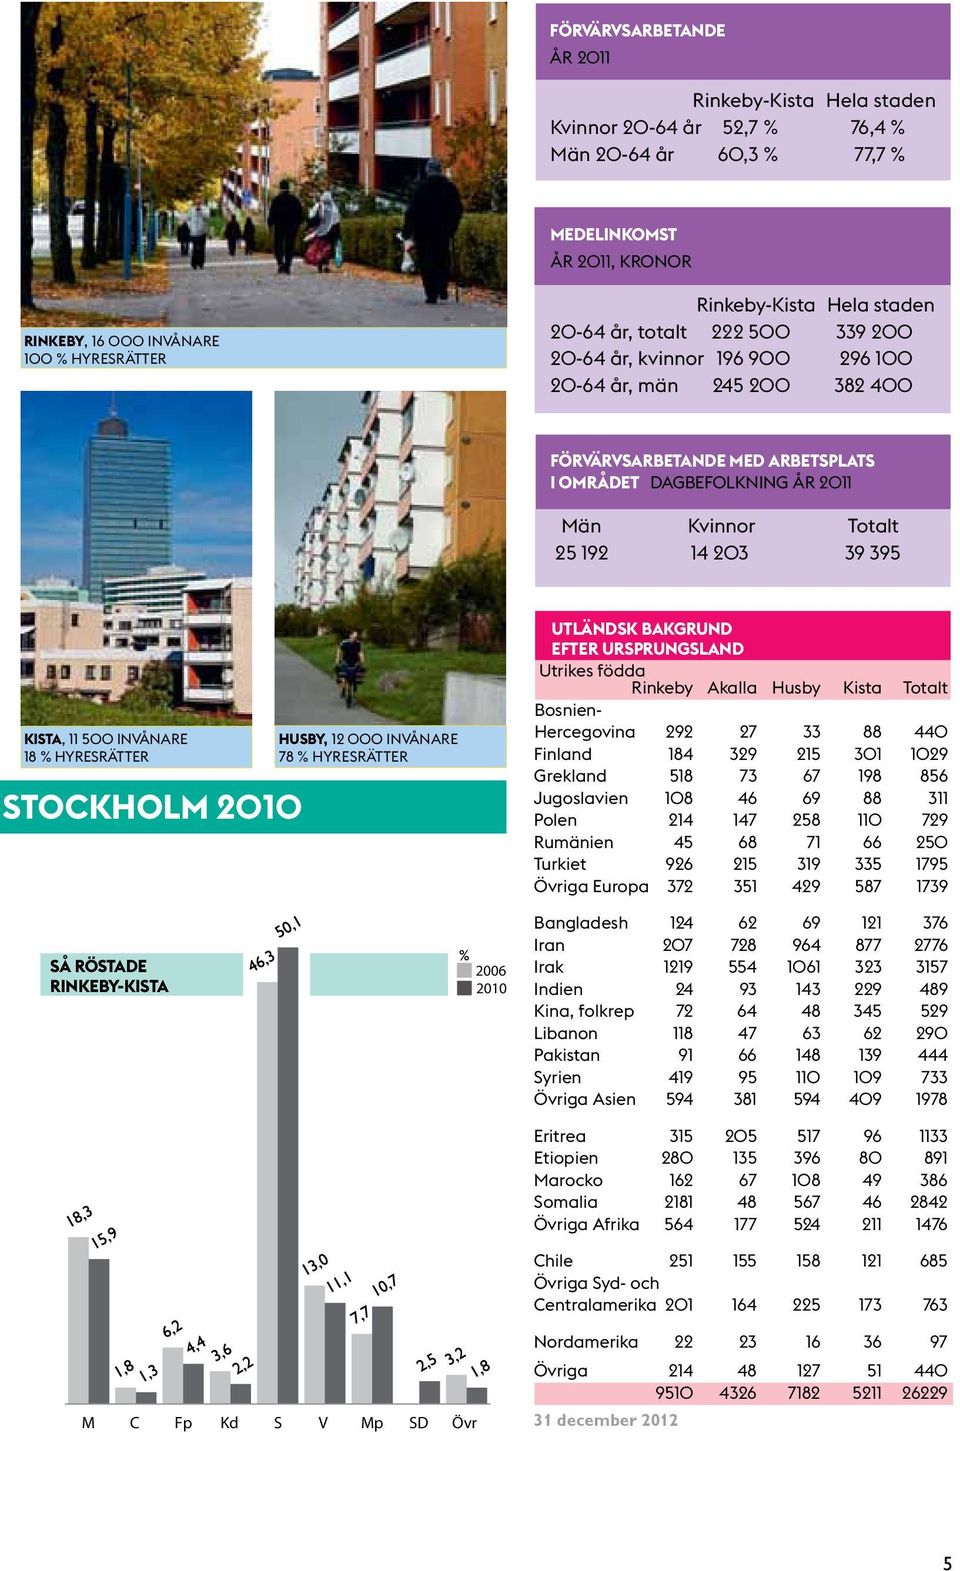 192 14 203 39 395 KISTA, 11 500 invånare 18 % hyresrätter STOCKHOLM 2010 Husby, 12 000 invånare 78 % hyresrätter UTLÄNDSK BAKGRUND EFTER URSPRUNGSLAND Utrikes födda Rinkeby Akalla Husby Kista Totalt